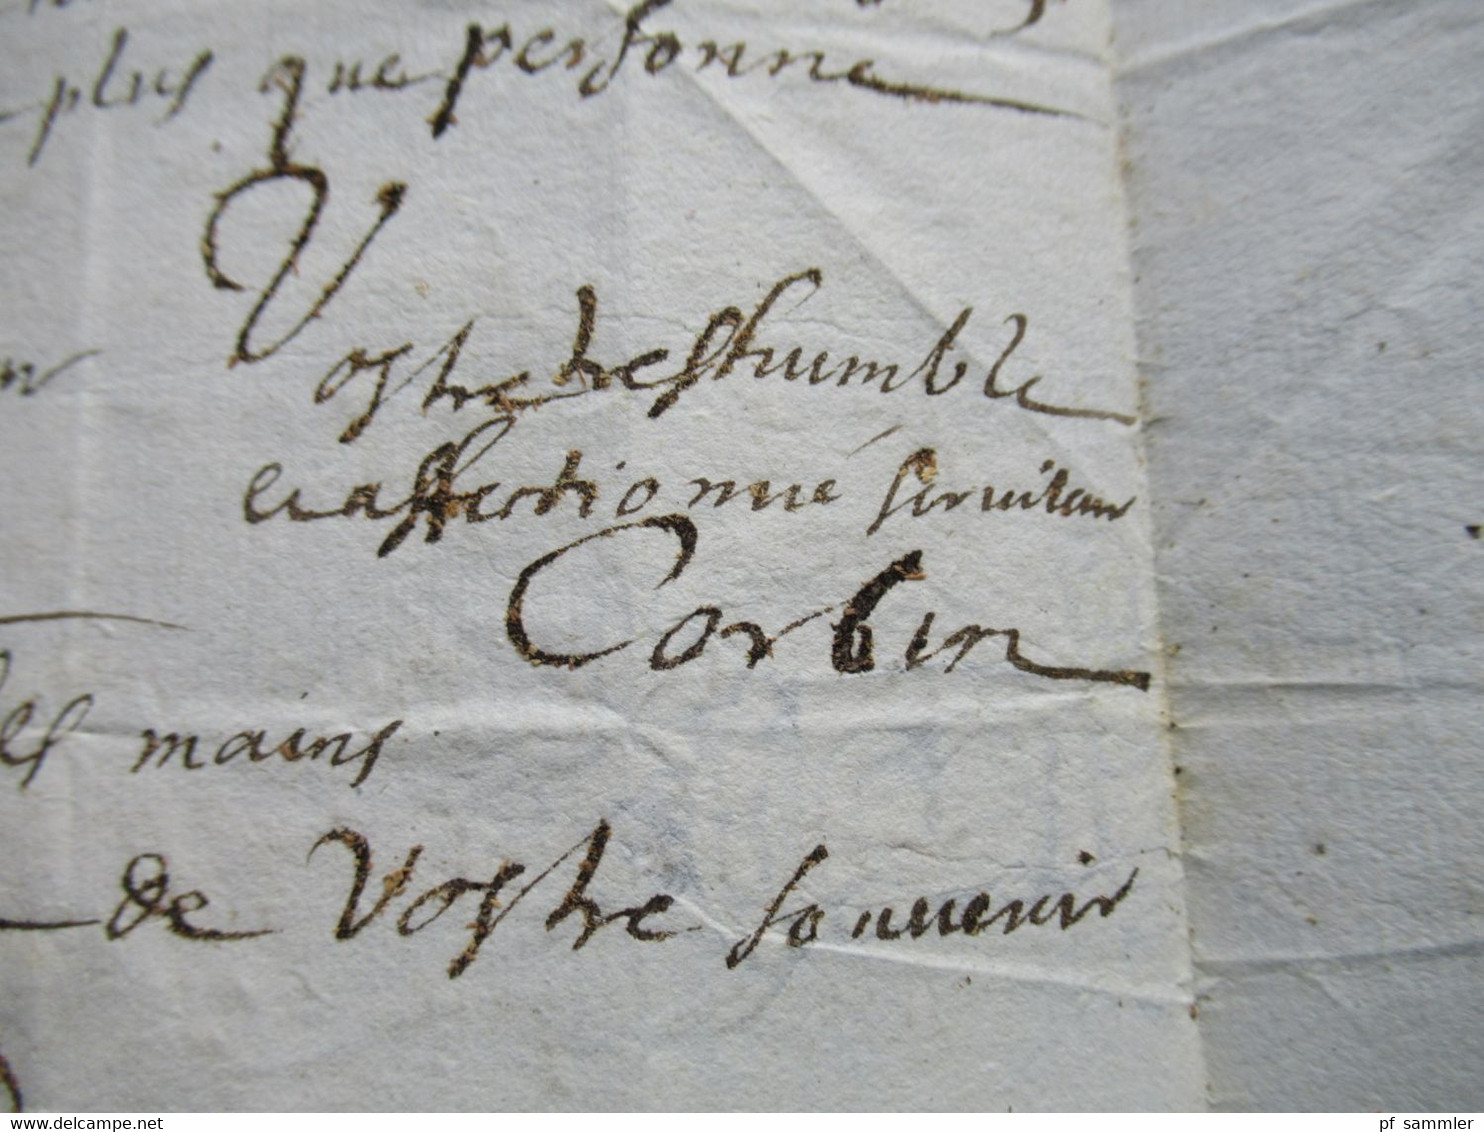 Paris - Beaufort an den Notaire Faltbrief mit Inhalt / lettre aus dem Jahre 1646 / Datum 20.10.1646 Zeit von Ludwig XIV